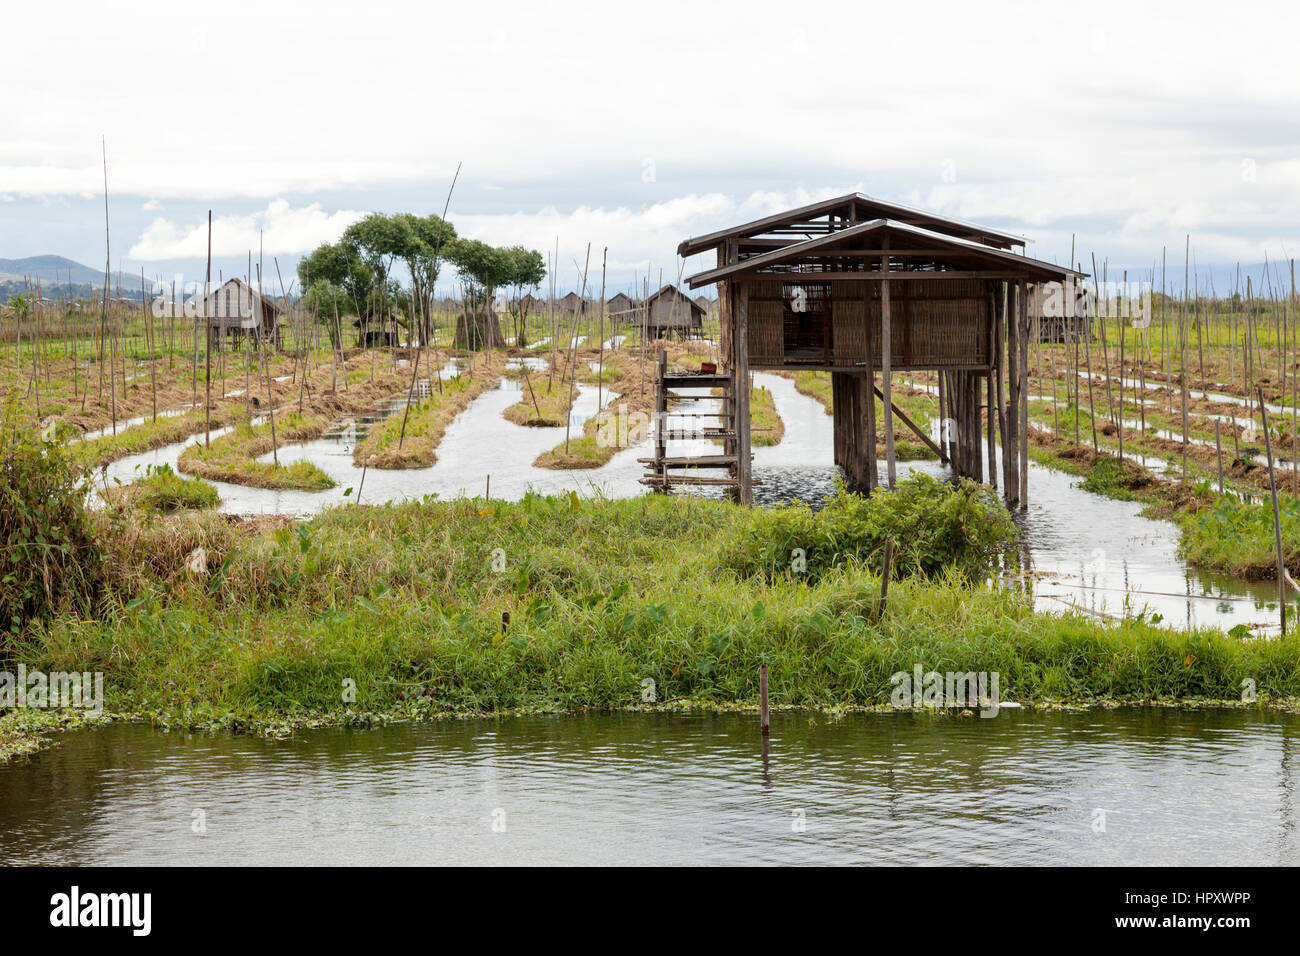 Entretenue jardins flottants du lac Inle, à Haspres Thauk (Myanmar). Sur la surface de l'eau, les Inthas Inle jardiniers réussissent à faire tapis végétaux Banque D'Images